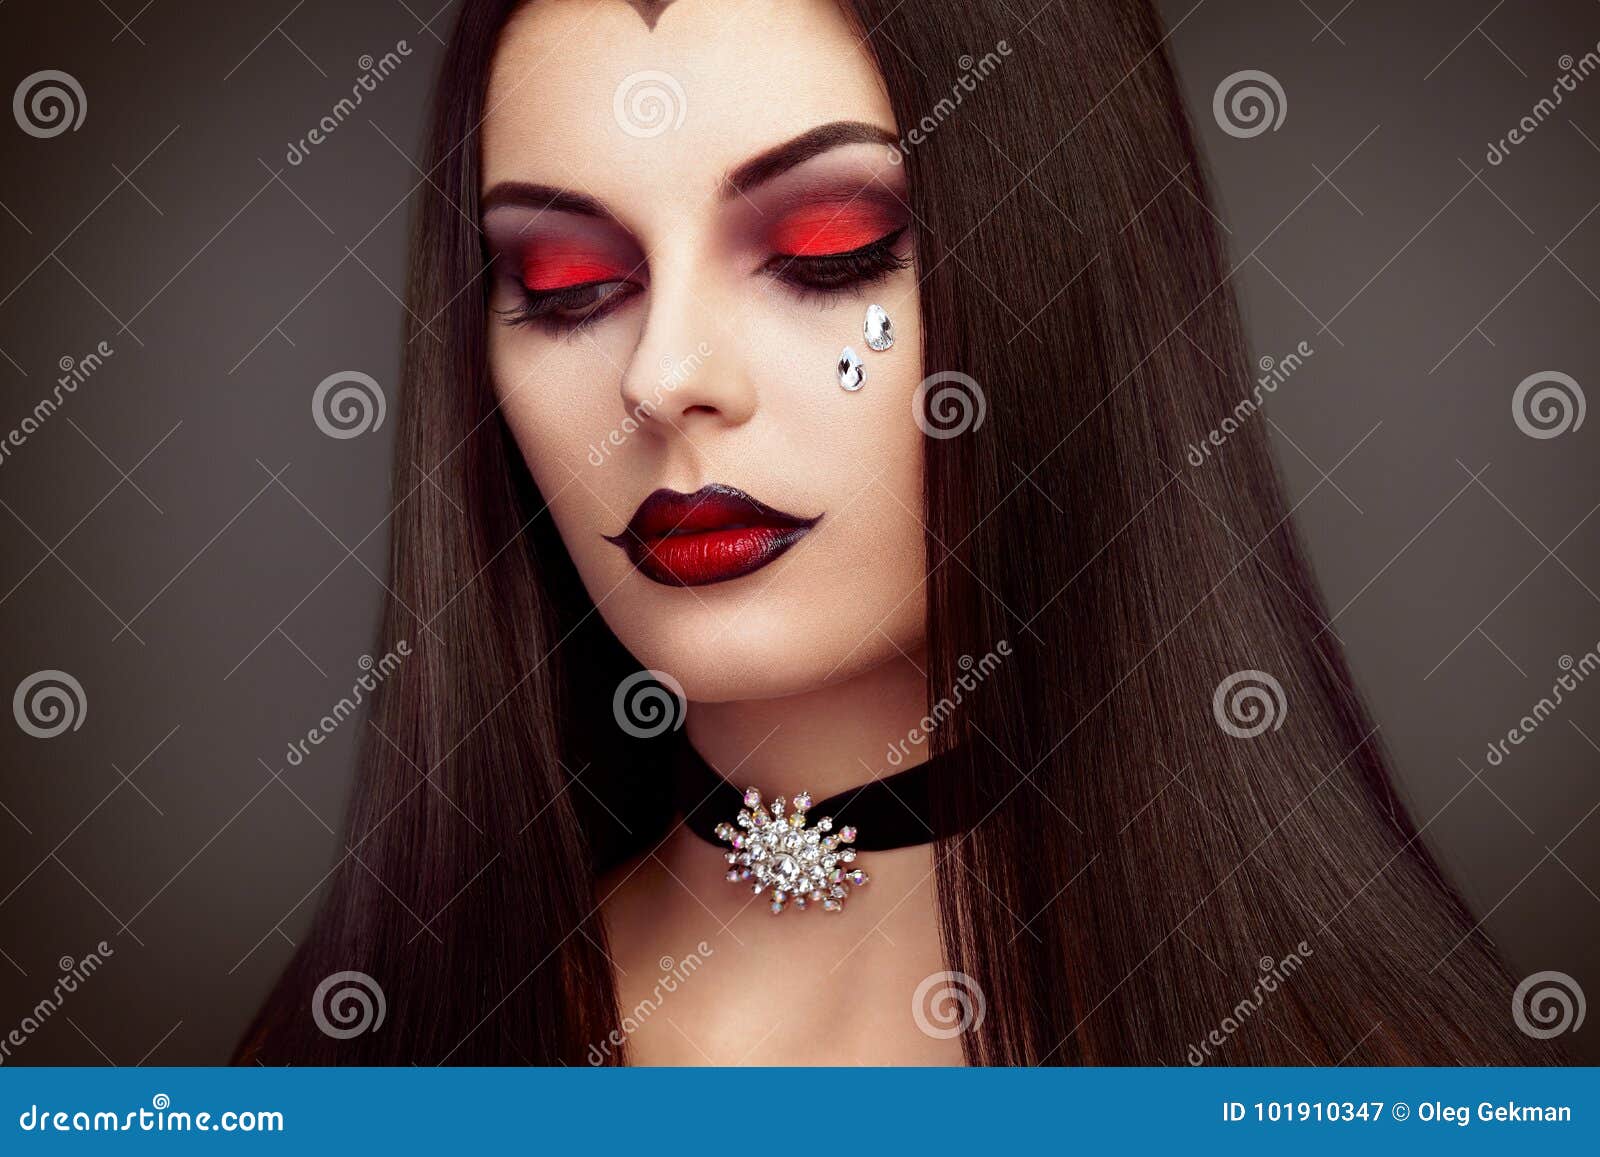 Retrato De La Mujer Del Vampiro De Halloween Imagen de archivo